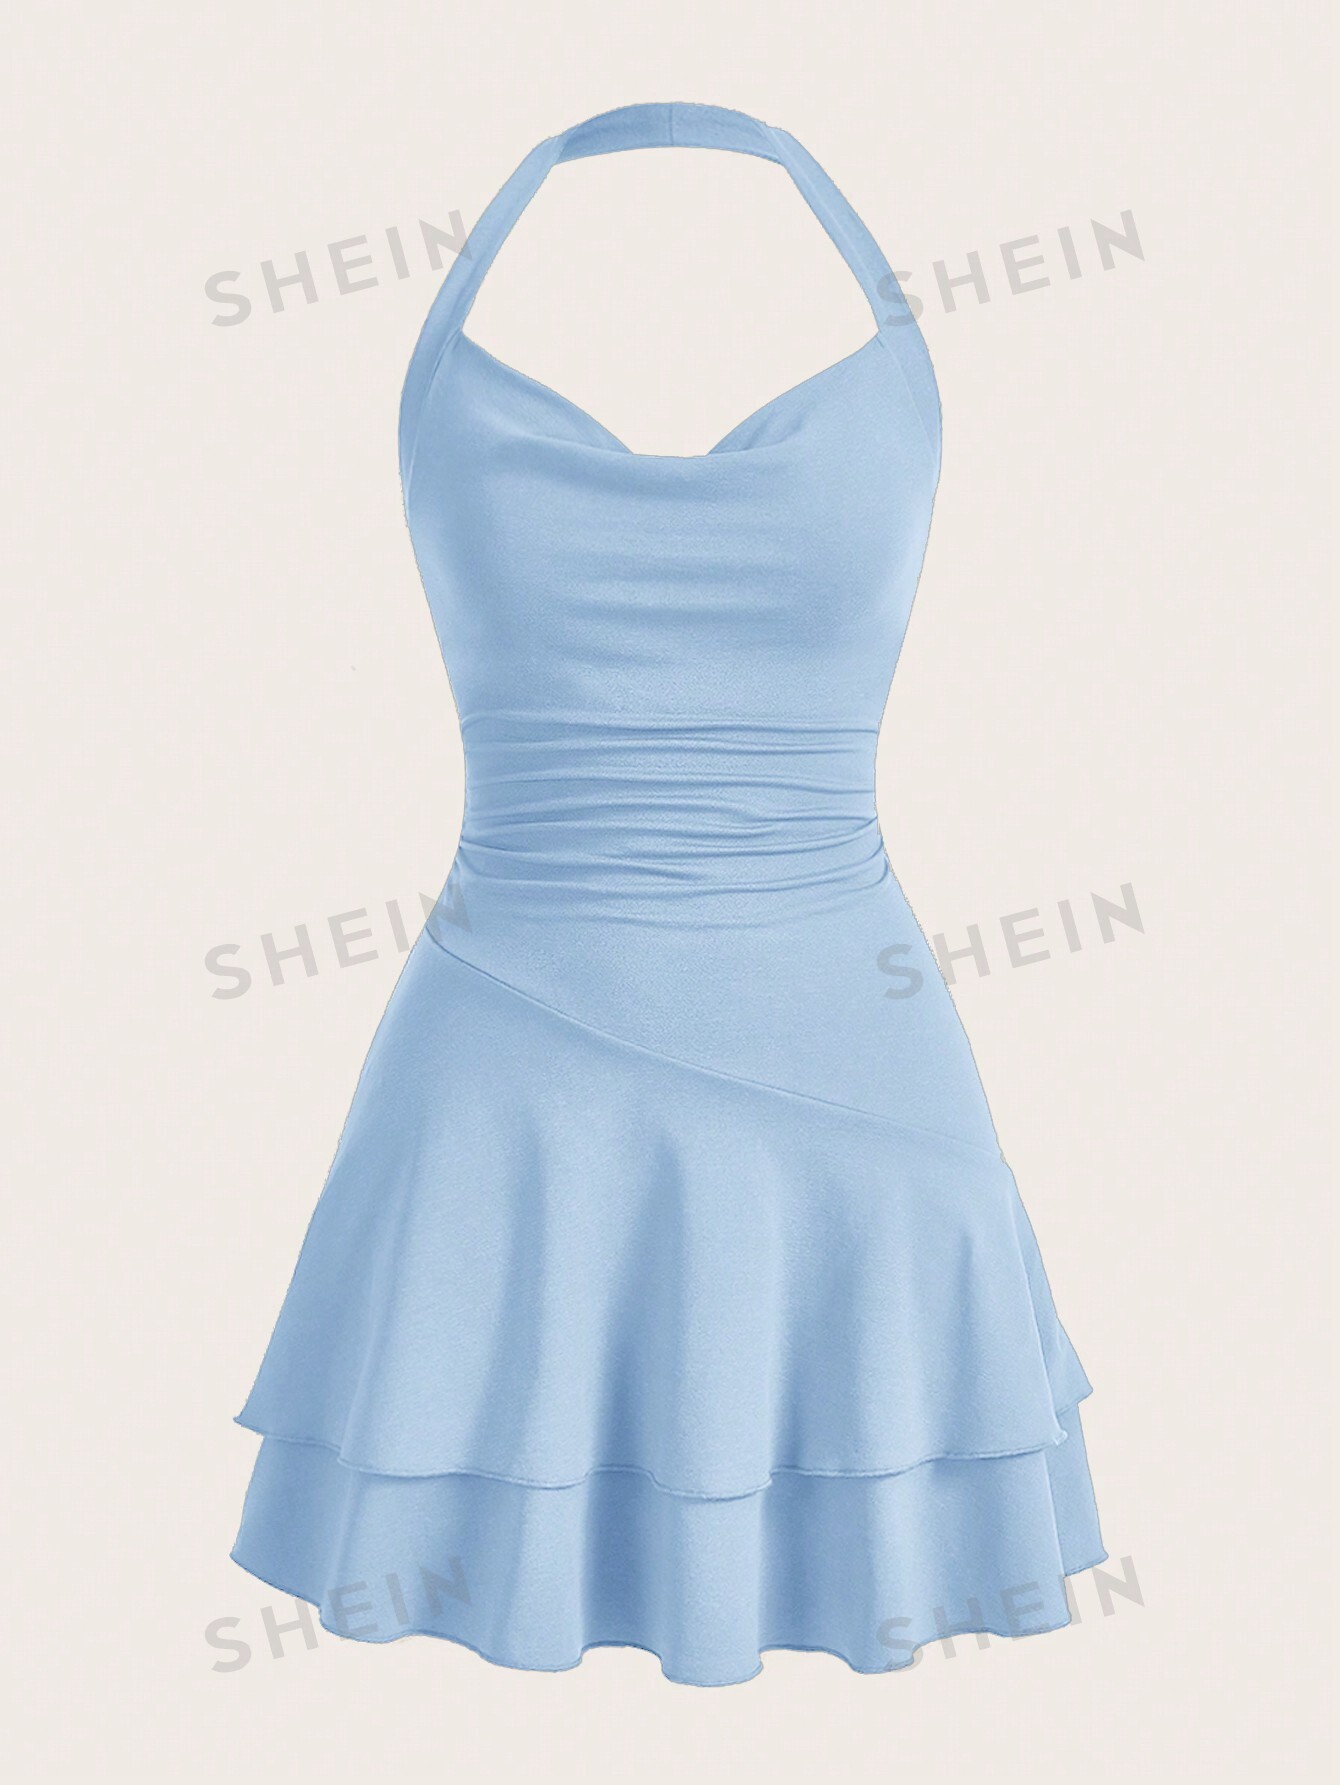 SHEIN MOD однотонное женское платье с бретелькой на шее и многослойным подолом, голубые женское облегающее платье hlj